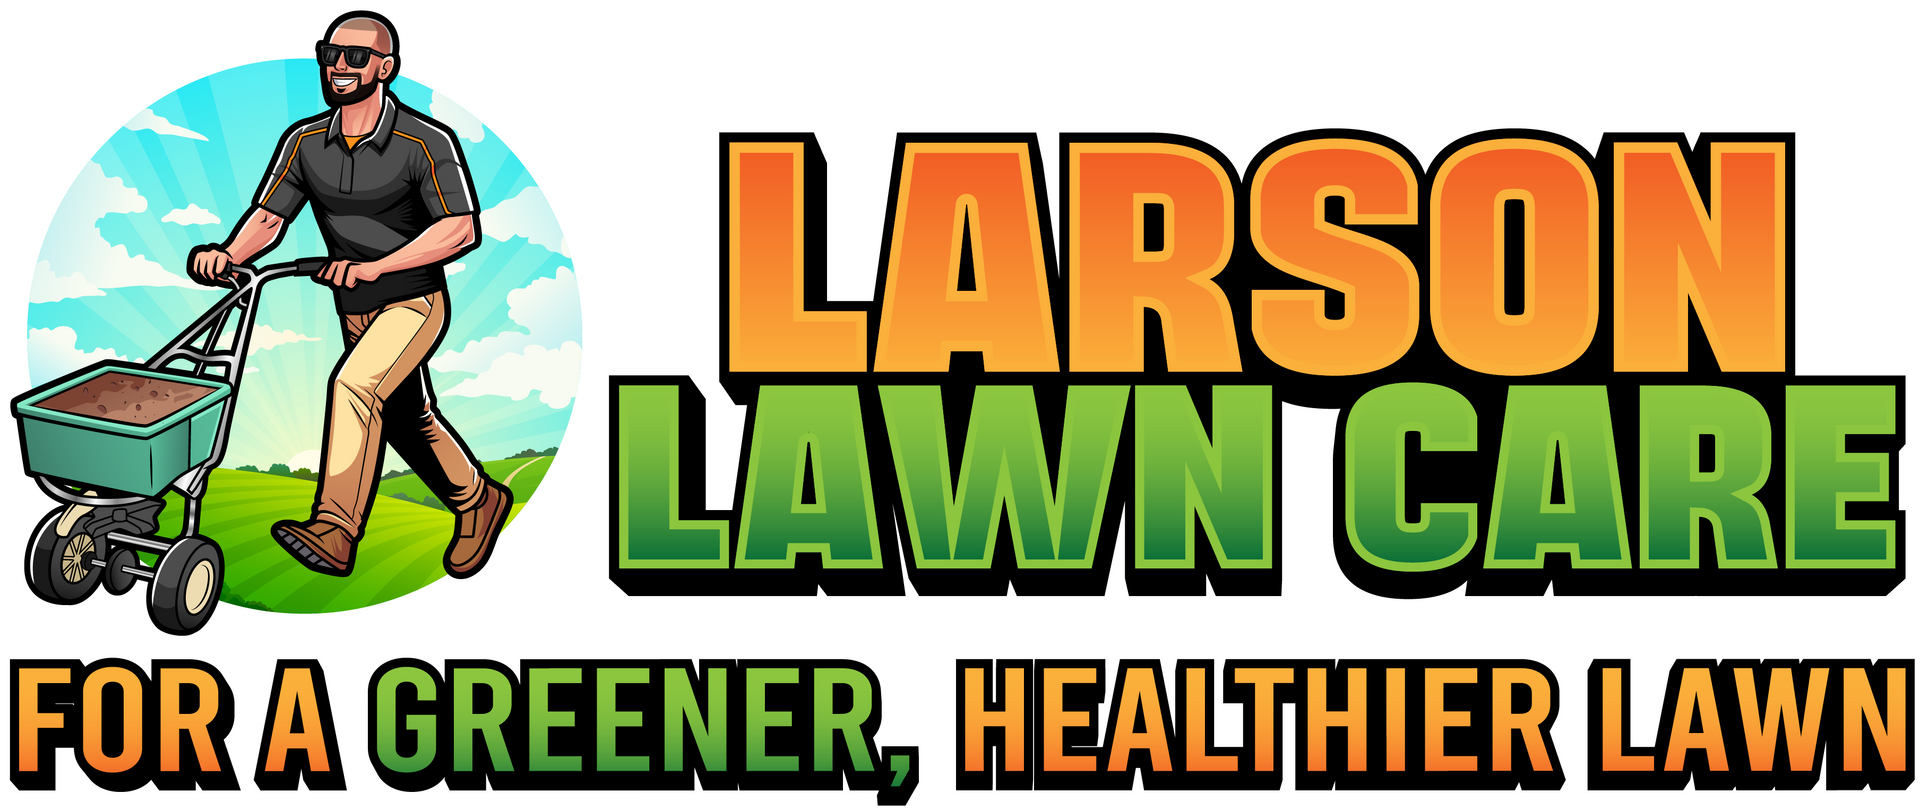 Larson Lawn Care